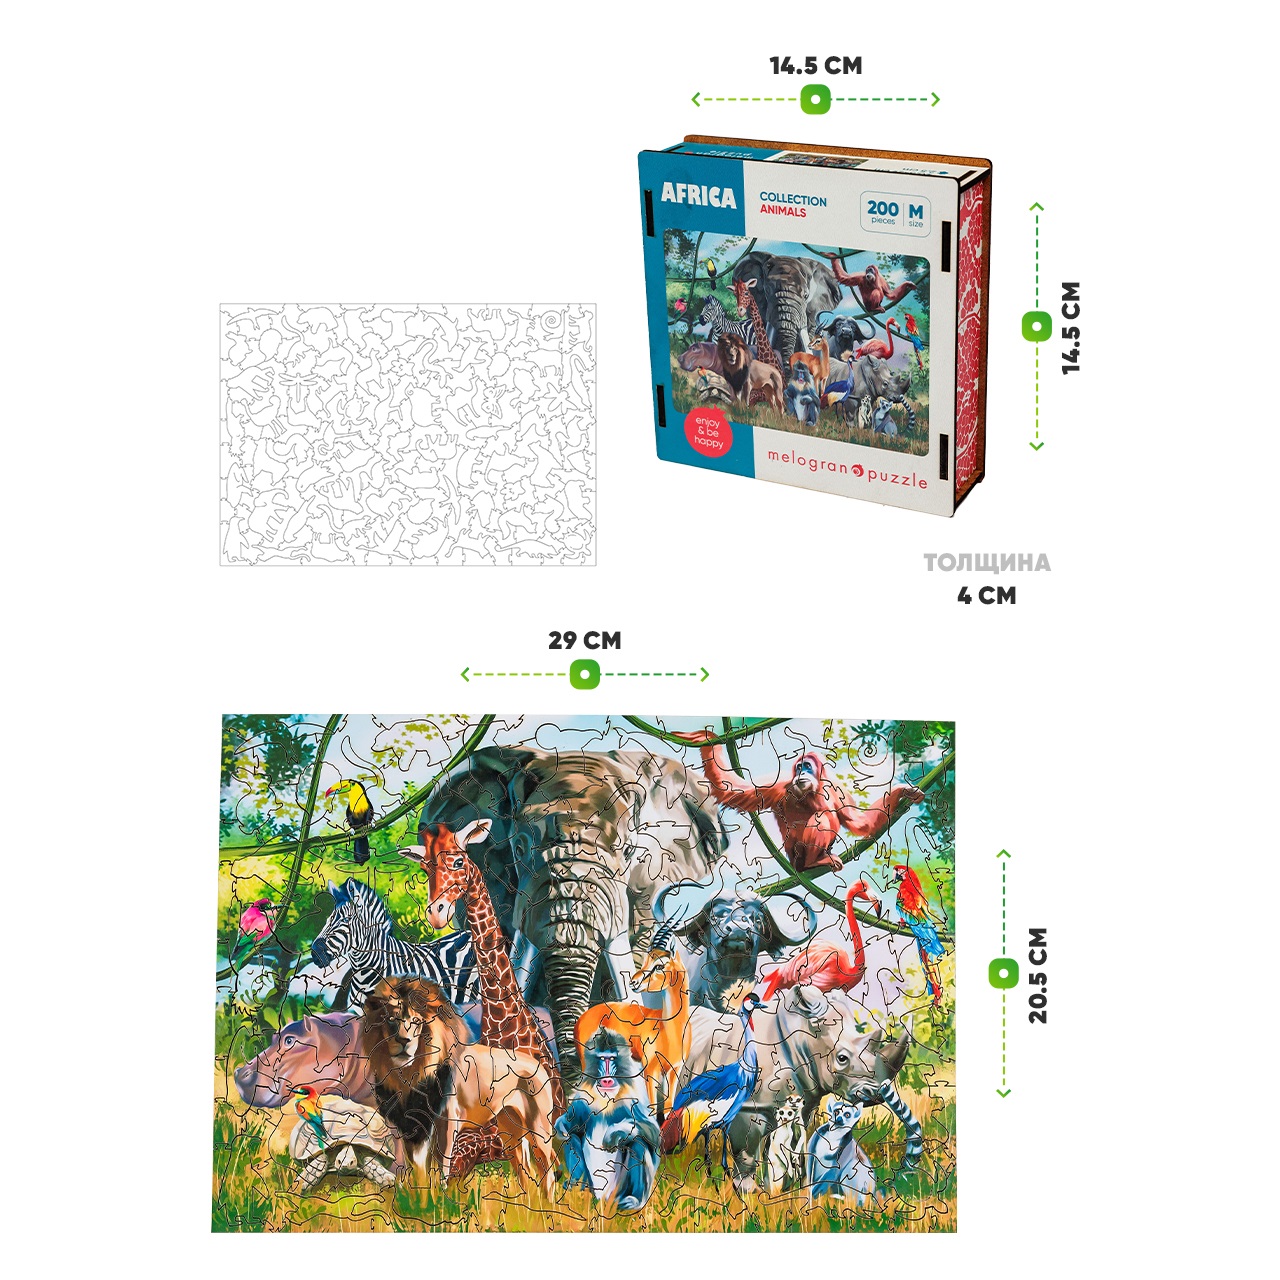 Деревянный пазл Melograno puzzle Животные Африки М 200 деталей - фото 4